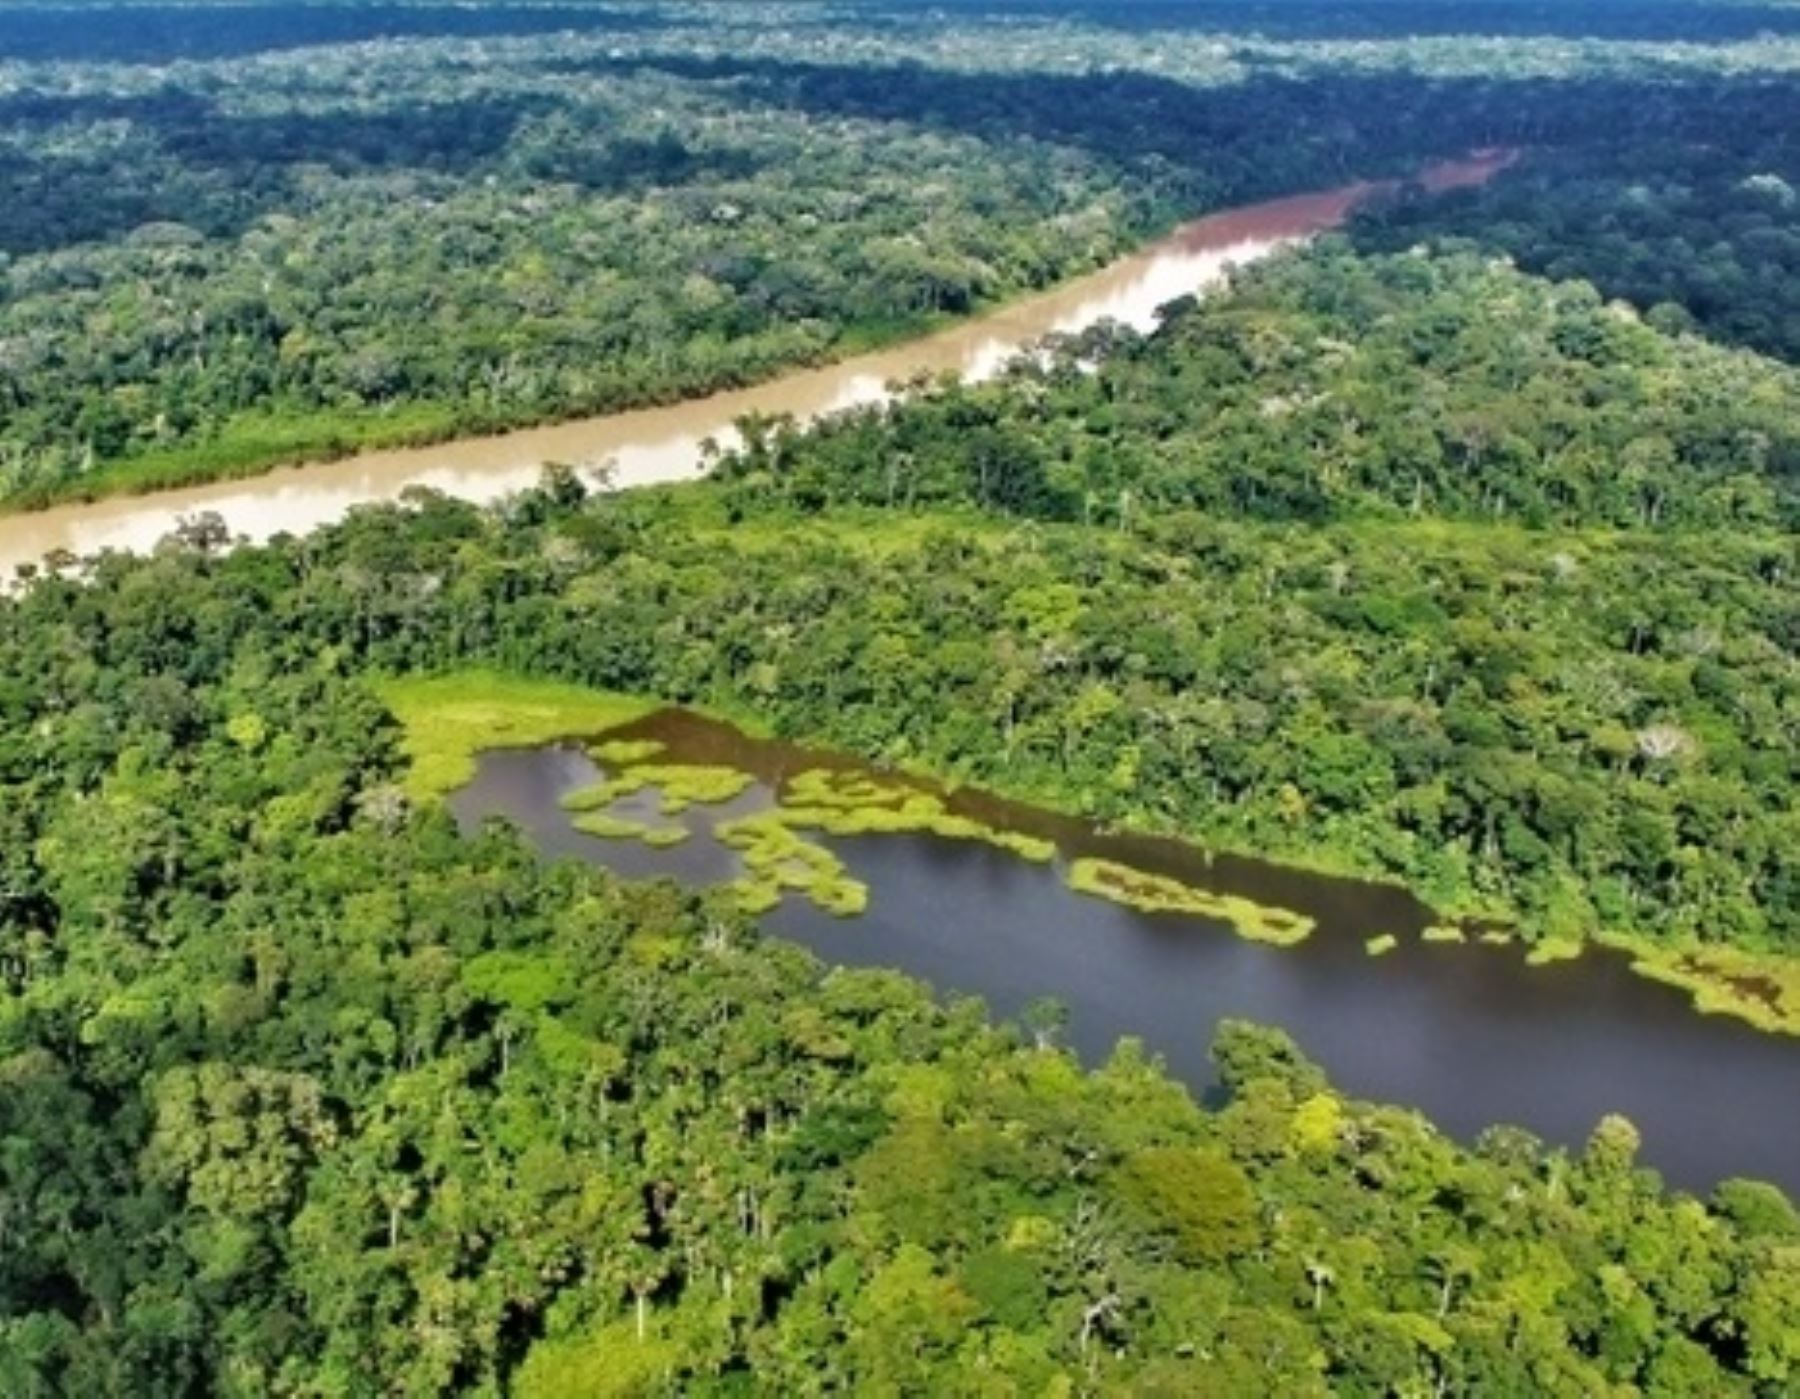 El Ministerio del Ambiente destacó los avances y resultados en las acciones de conservación de bosques en el Perú gracias a la acción del Programa Bosques. ANDINA/Difusión